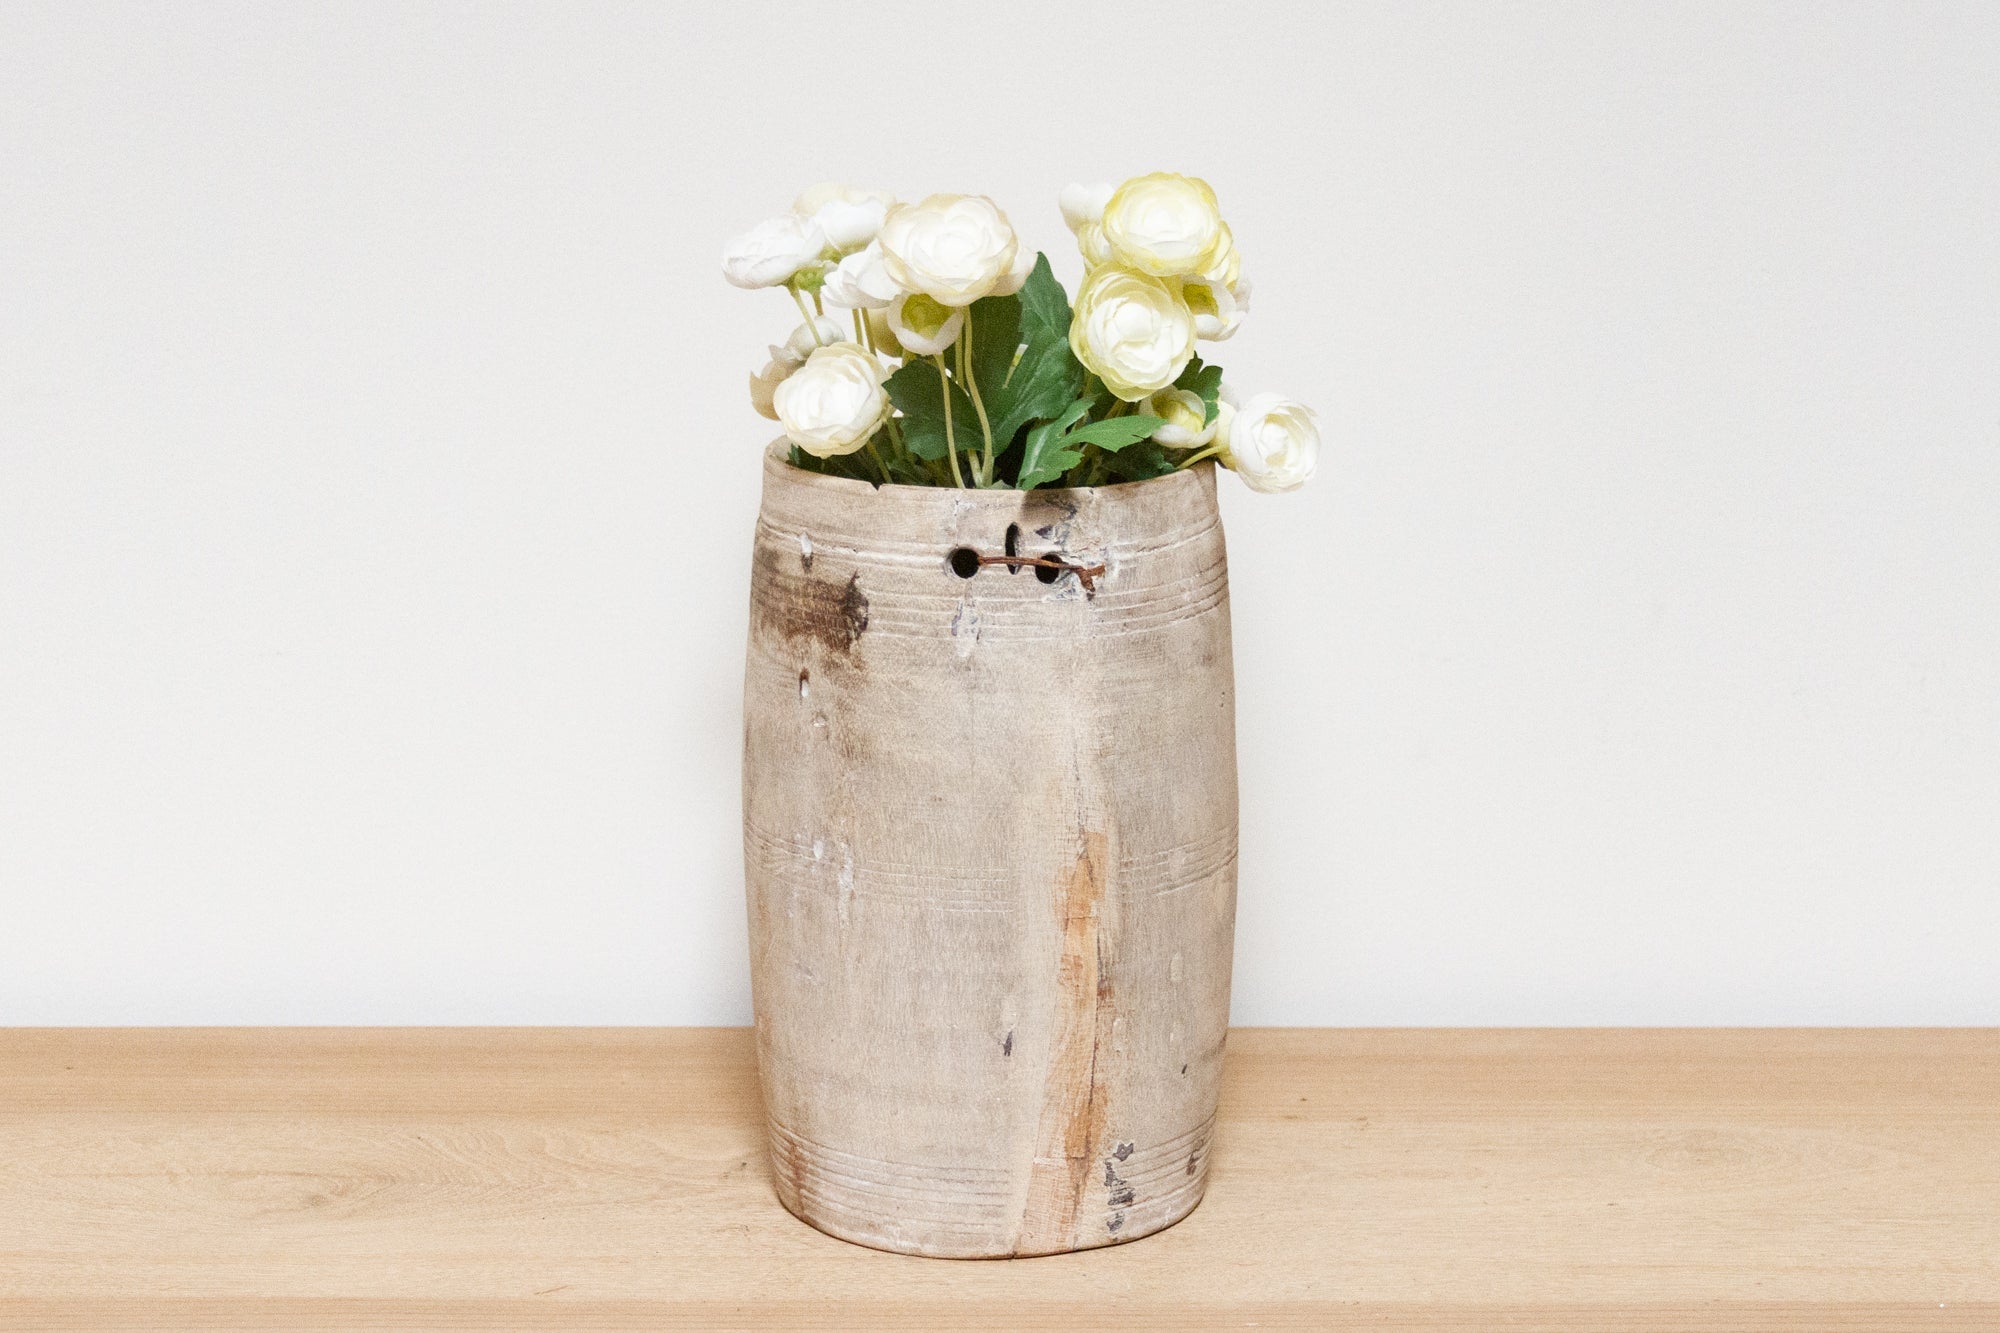 DE-COR | Ispirazione globale, Vaso primitivo in legno intagliato a mano - Pooran (commercio)